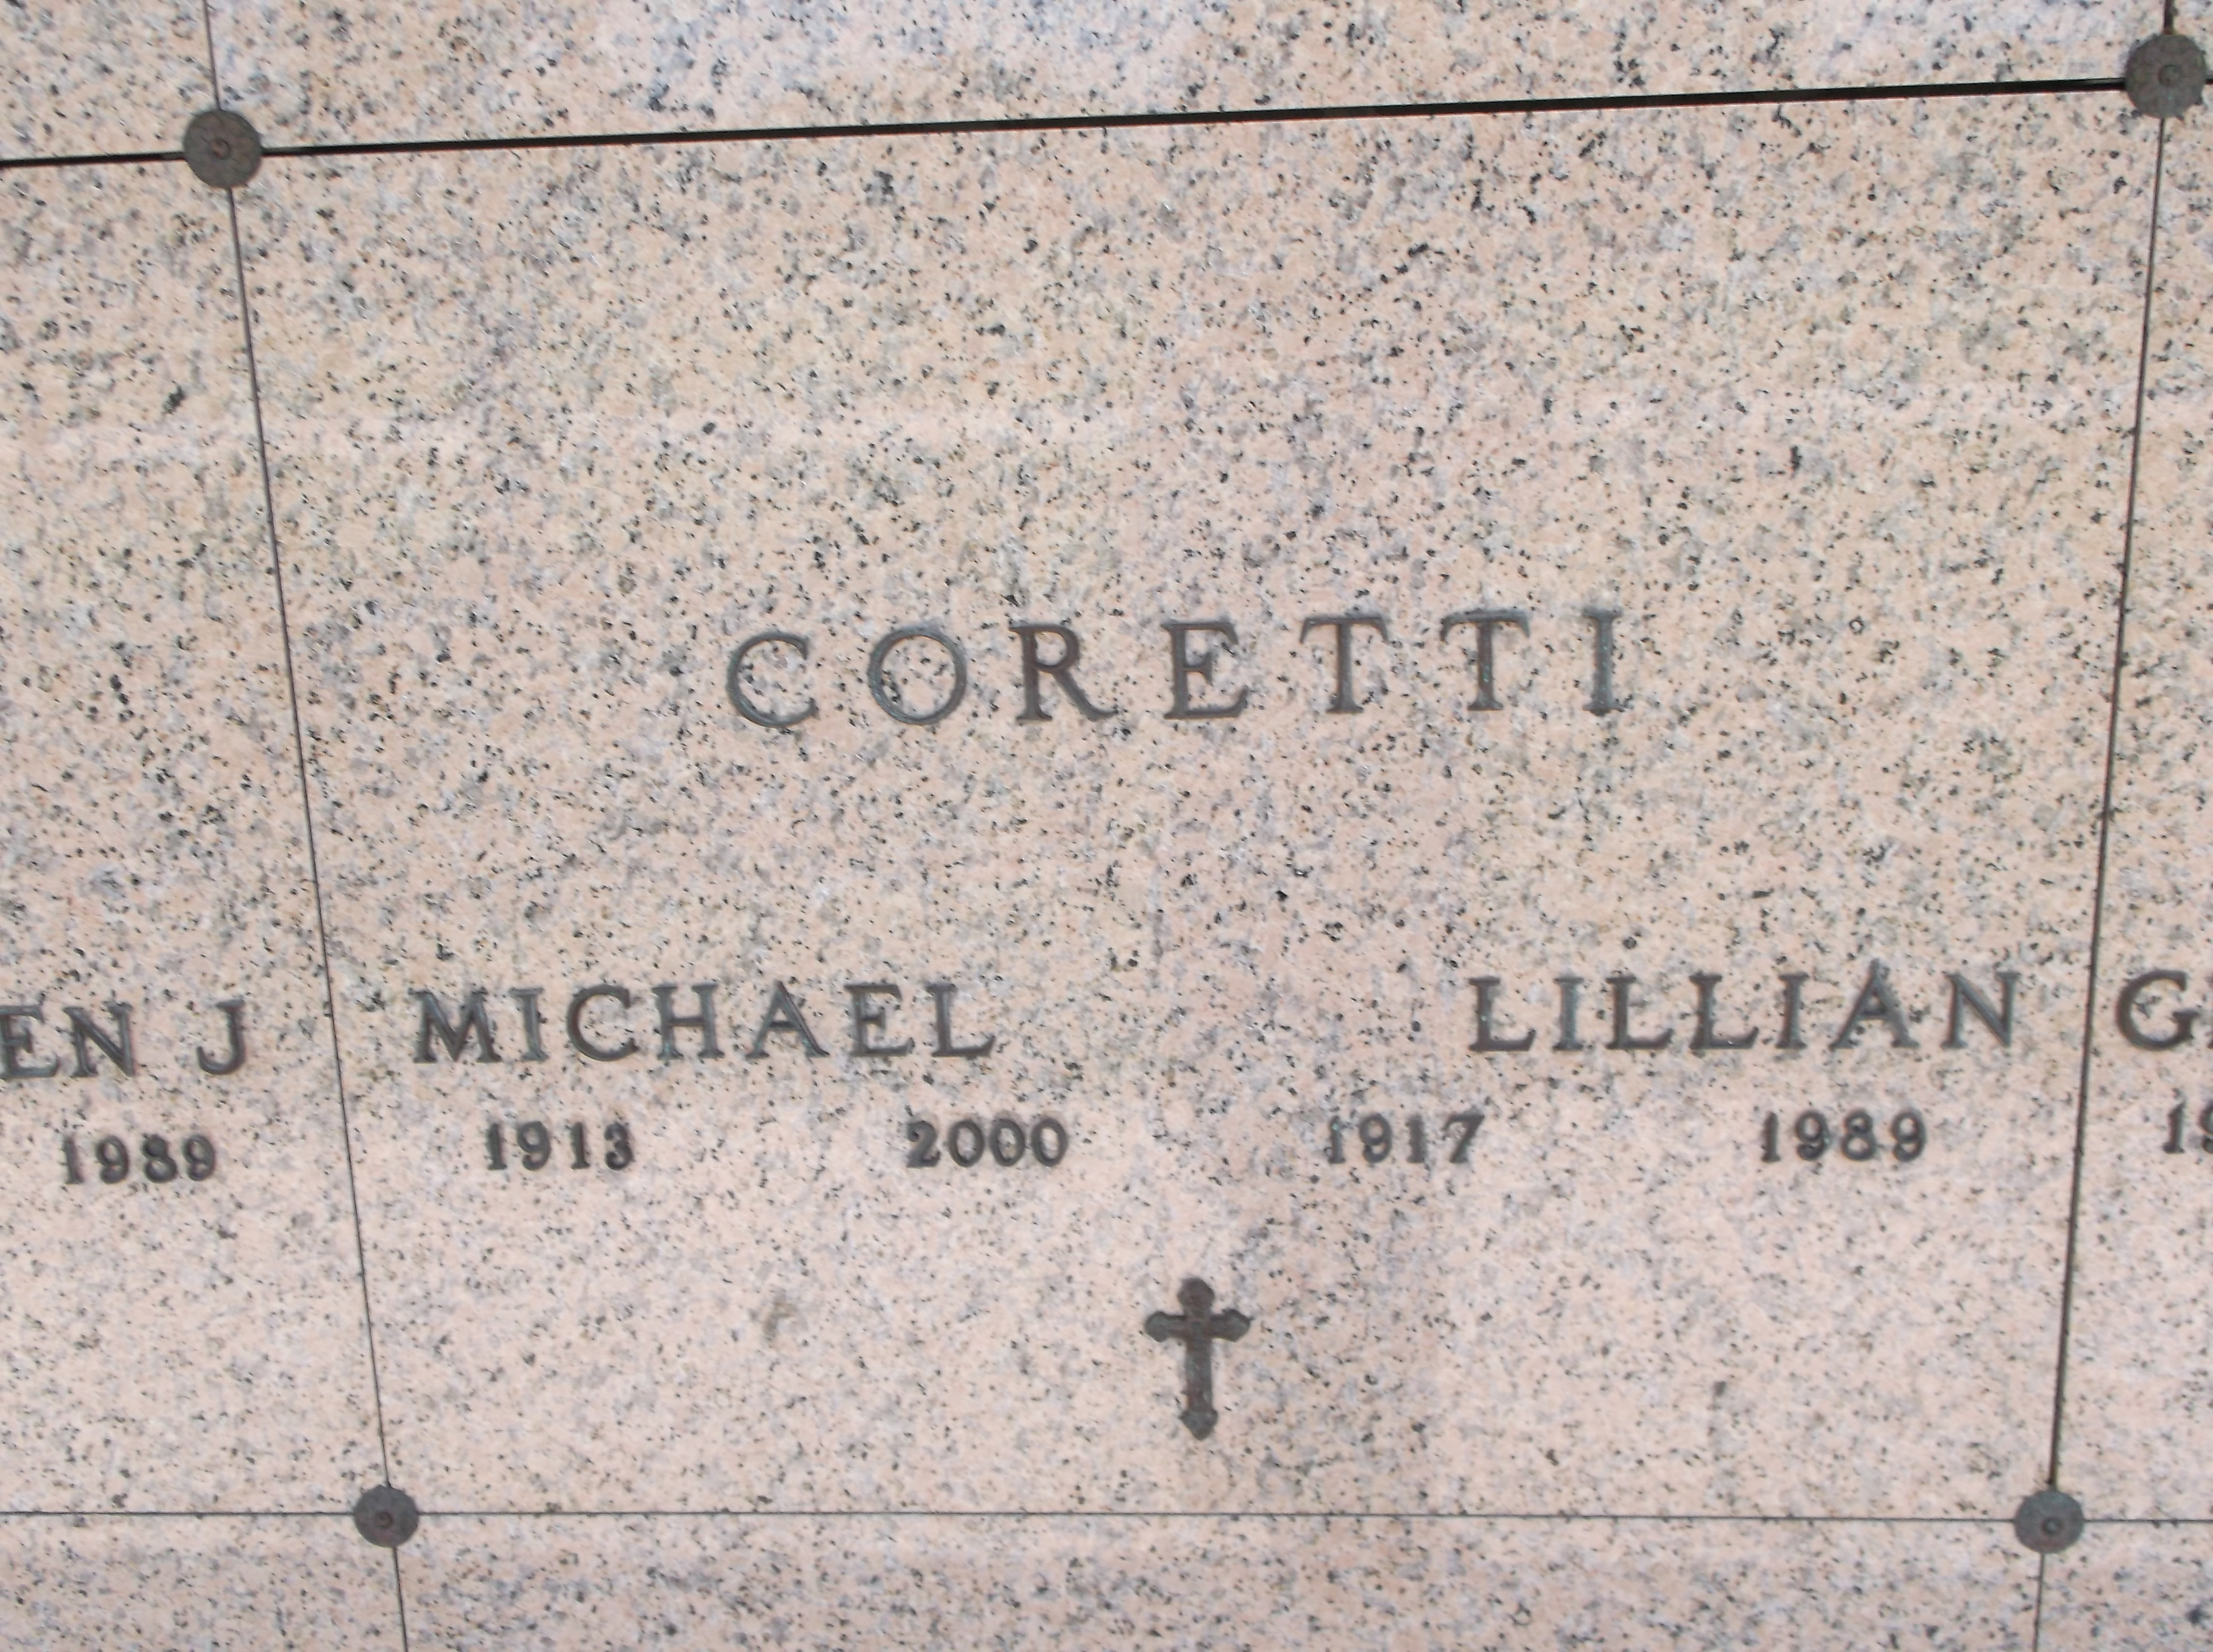 Lillian Coretti